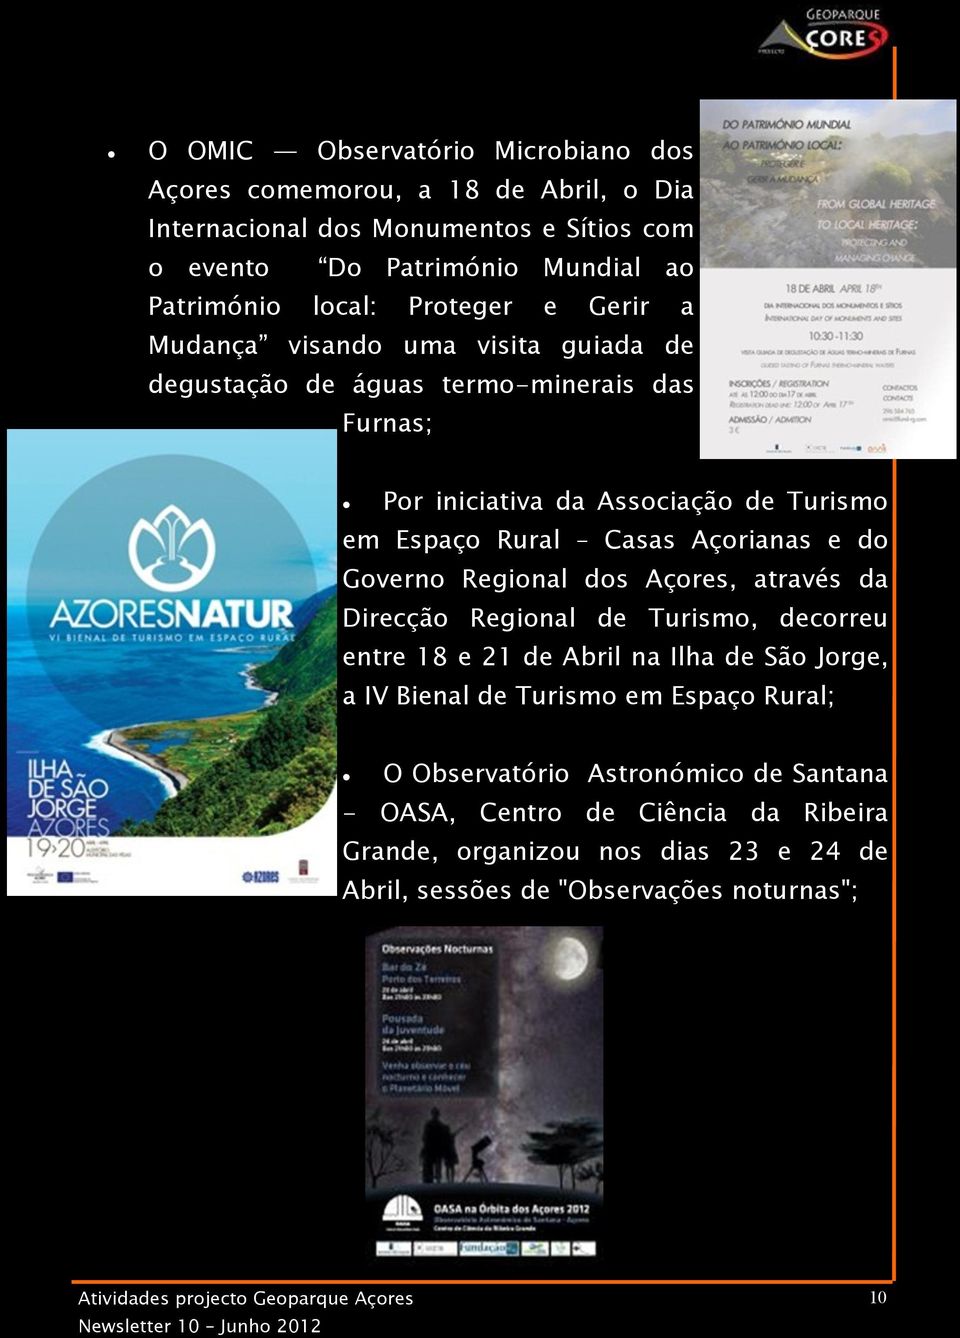 Açorianas e do Governo Regional dos Açores, através da Direcção Regional de Turismo, decorreu entre 18 e 21 de Abril na Ilha de São Jorge, a IV Bienal de Turismo em